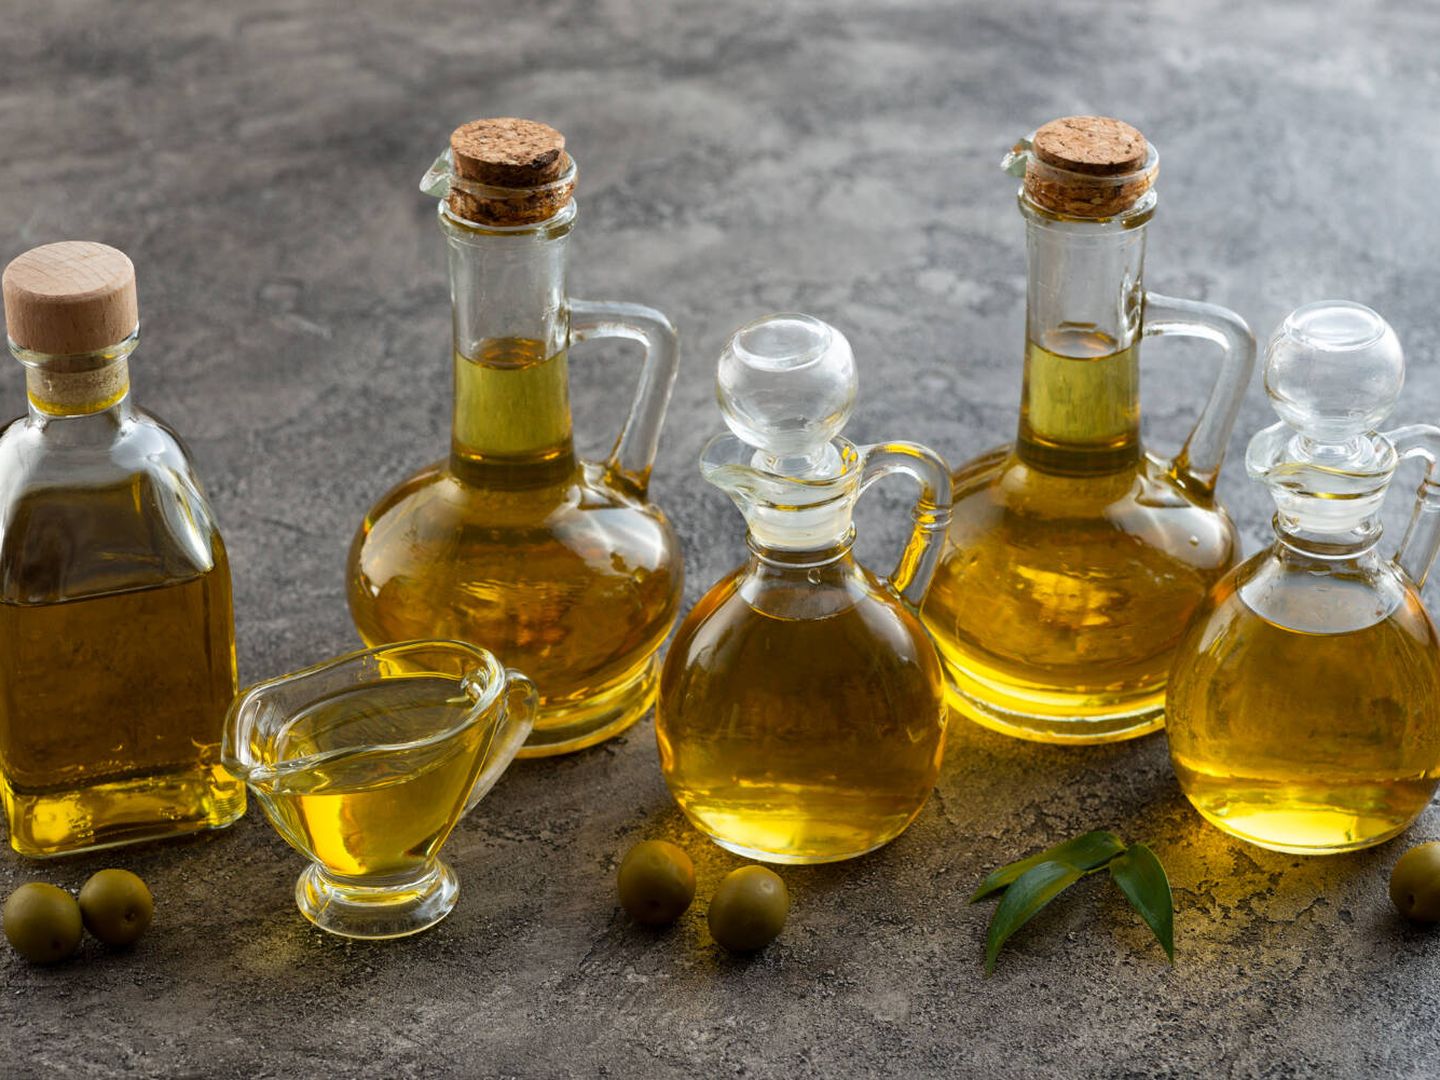 El objeto del estudio fue el consumo de aceite de oliva y su relación con la demencia. (Freepik)